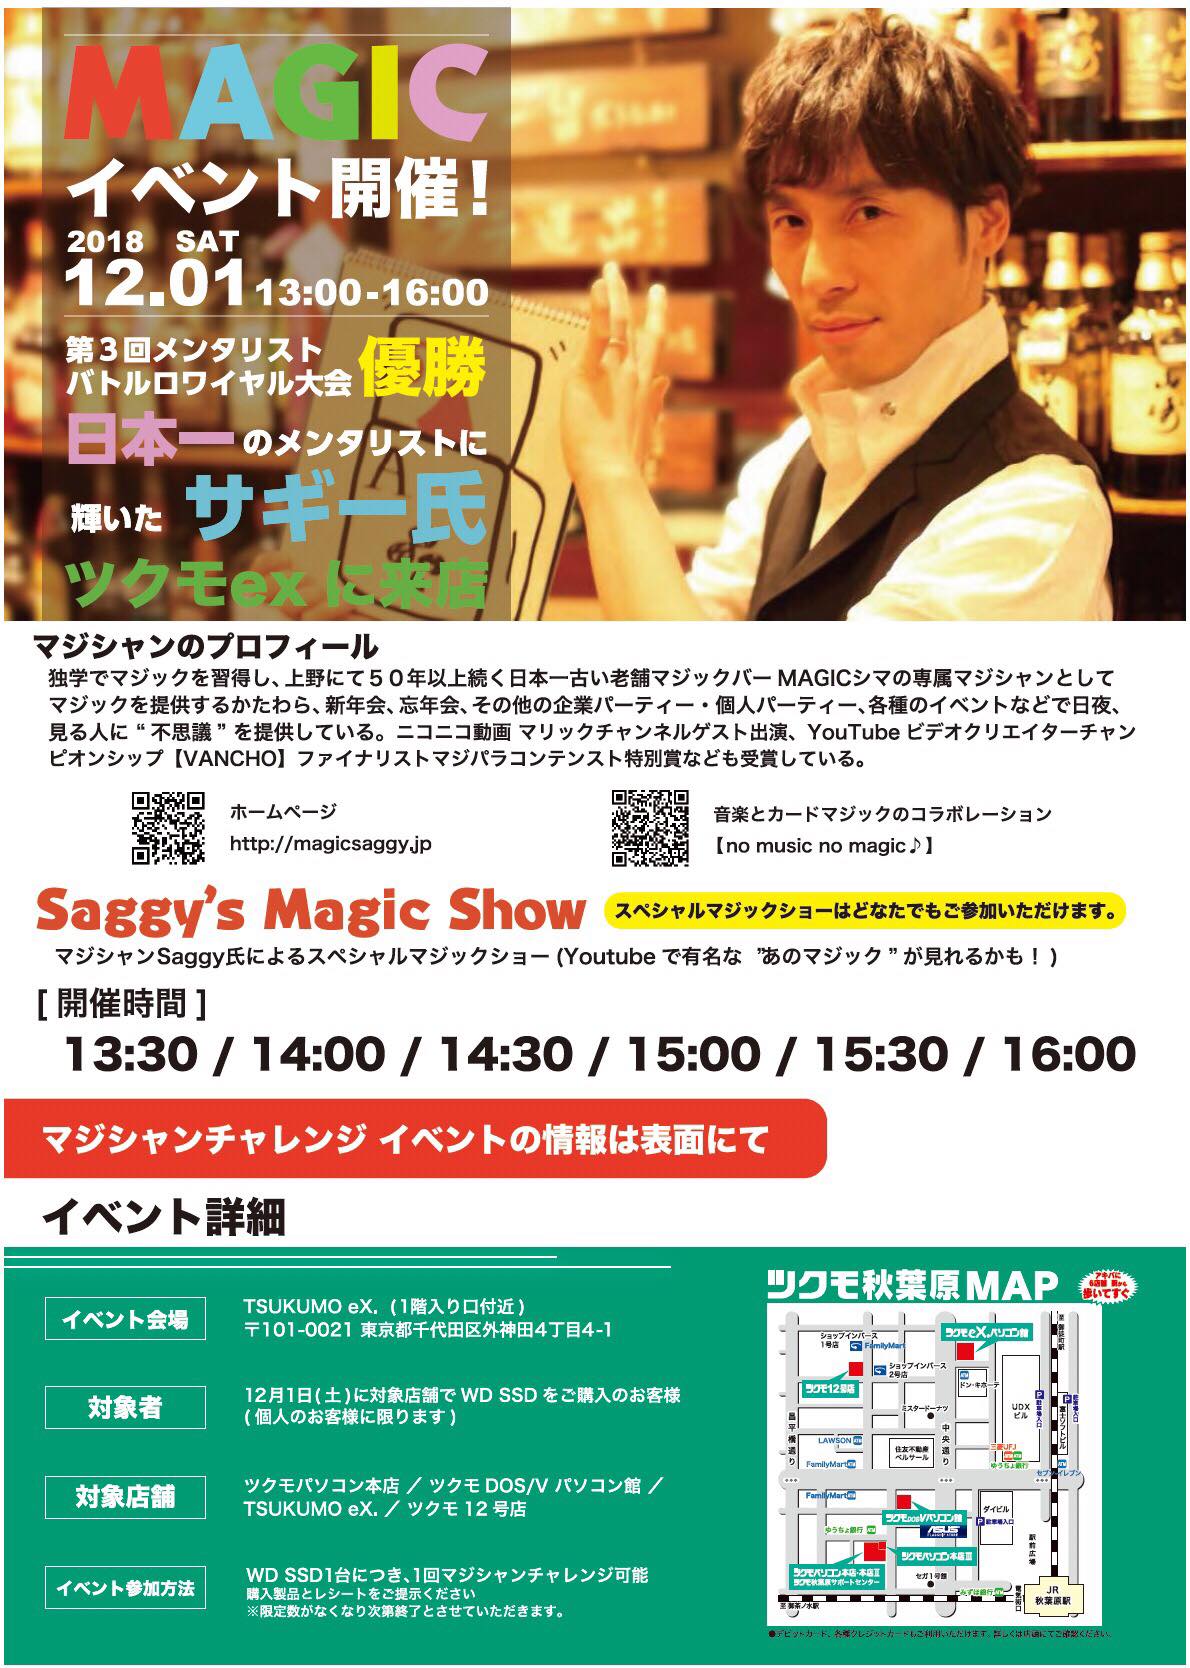 マジシャンSaggy on Twitter: "今週末12月1日（土）、秋葉原TUKUMOeX.様の店頭でマジックイベントを開催致します